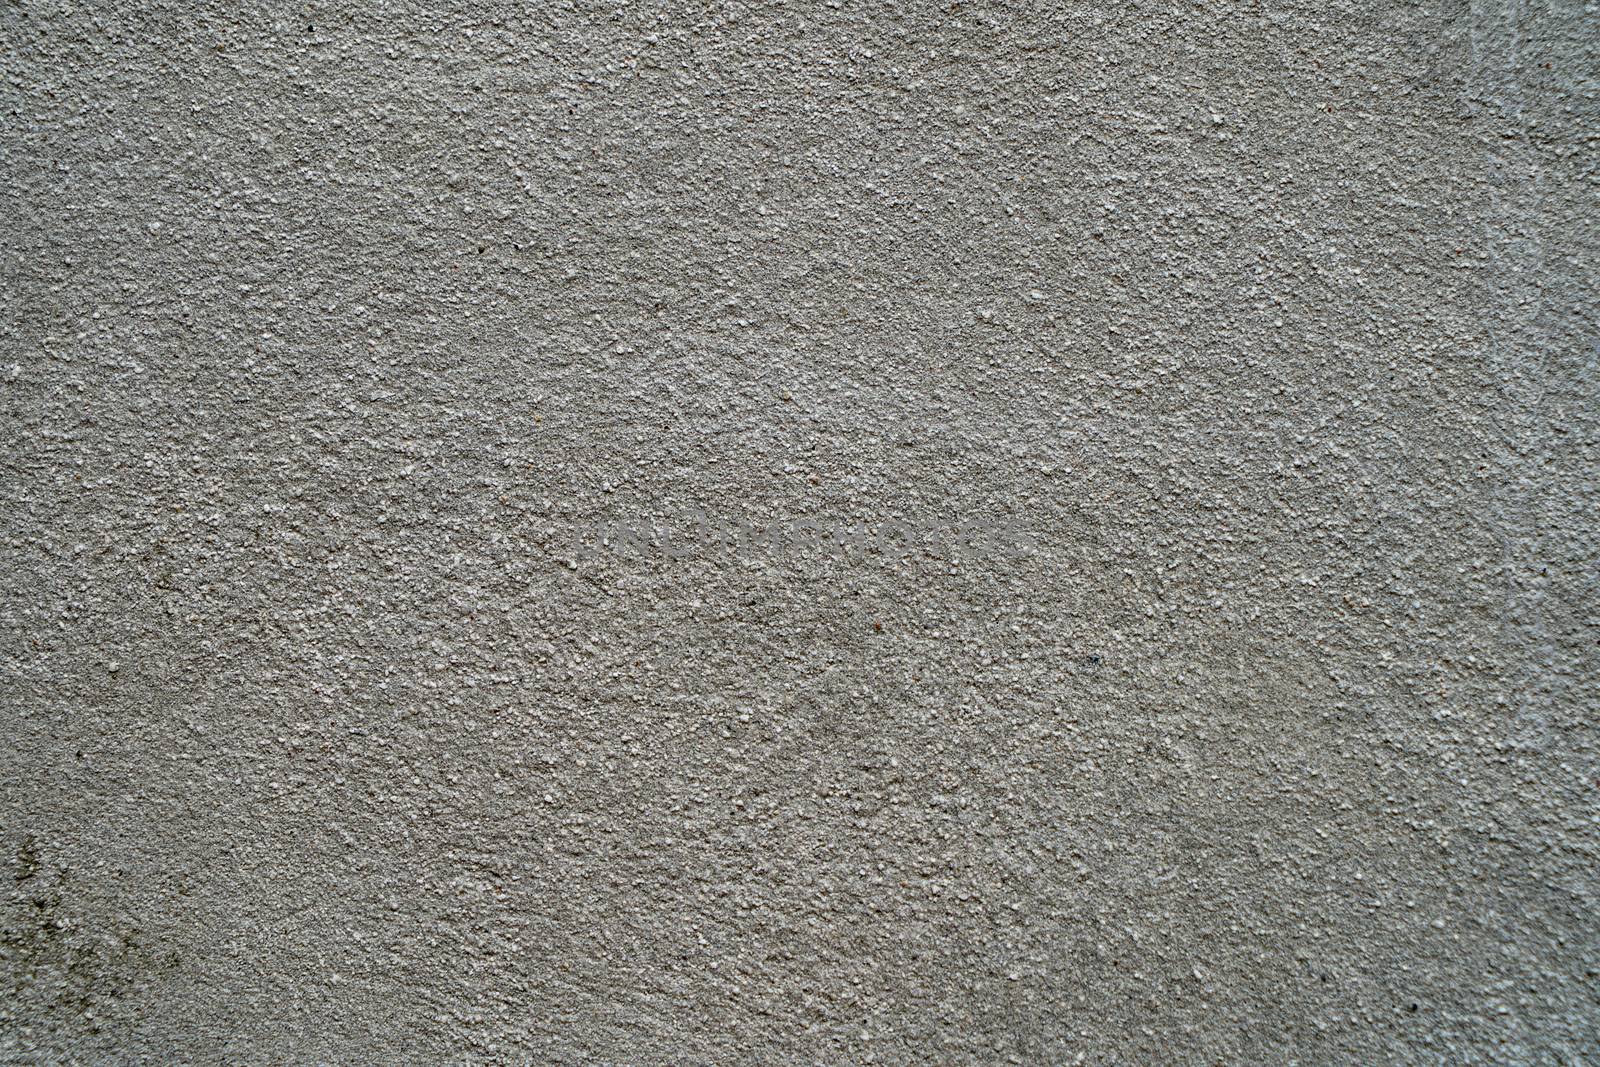 Concrete texture by jrivalta